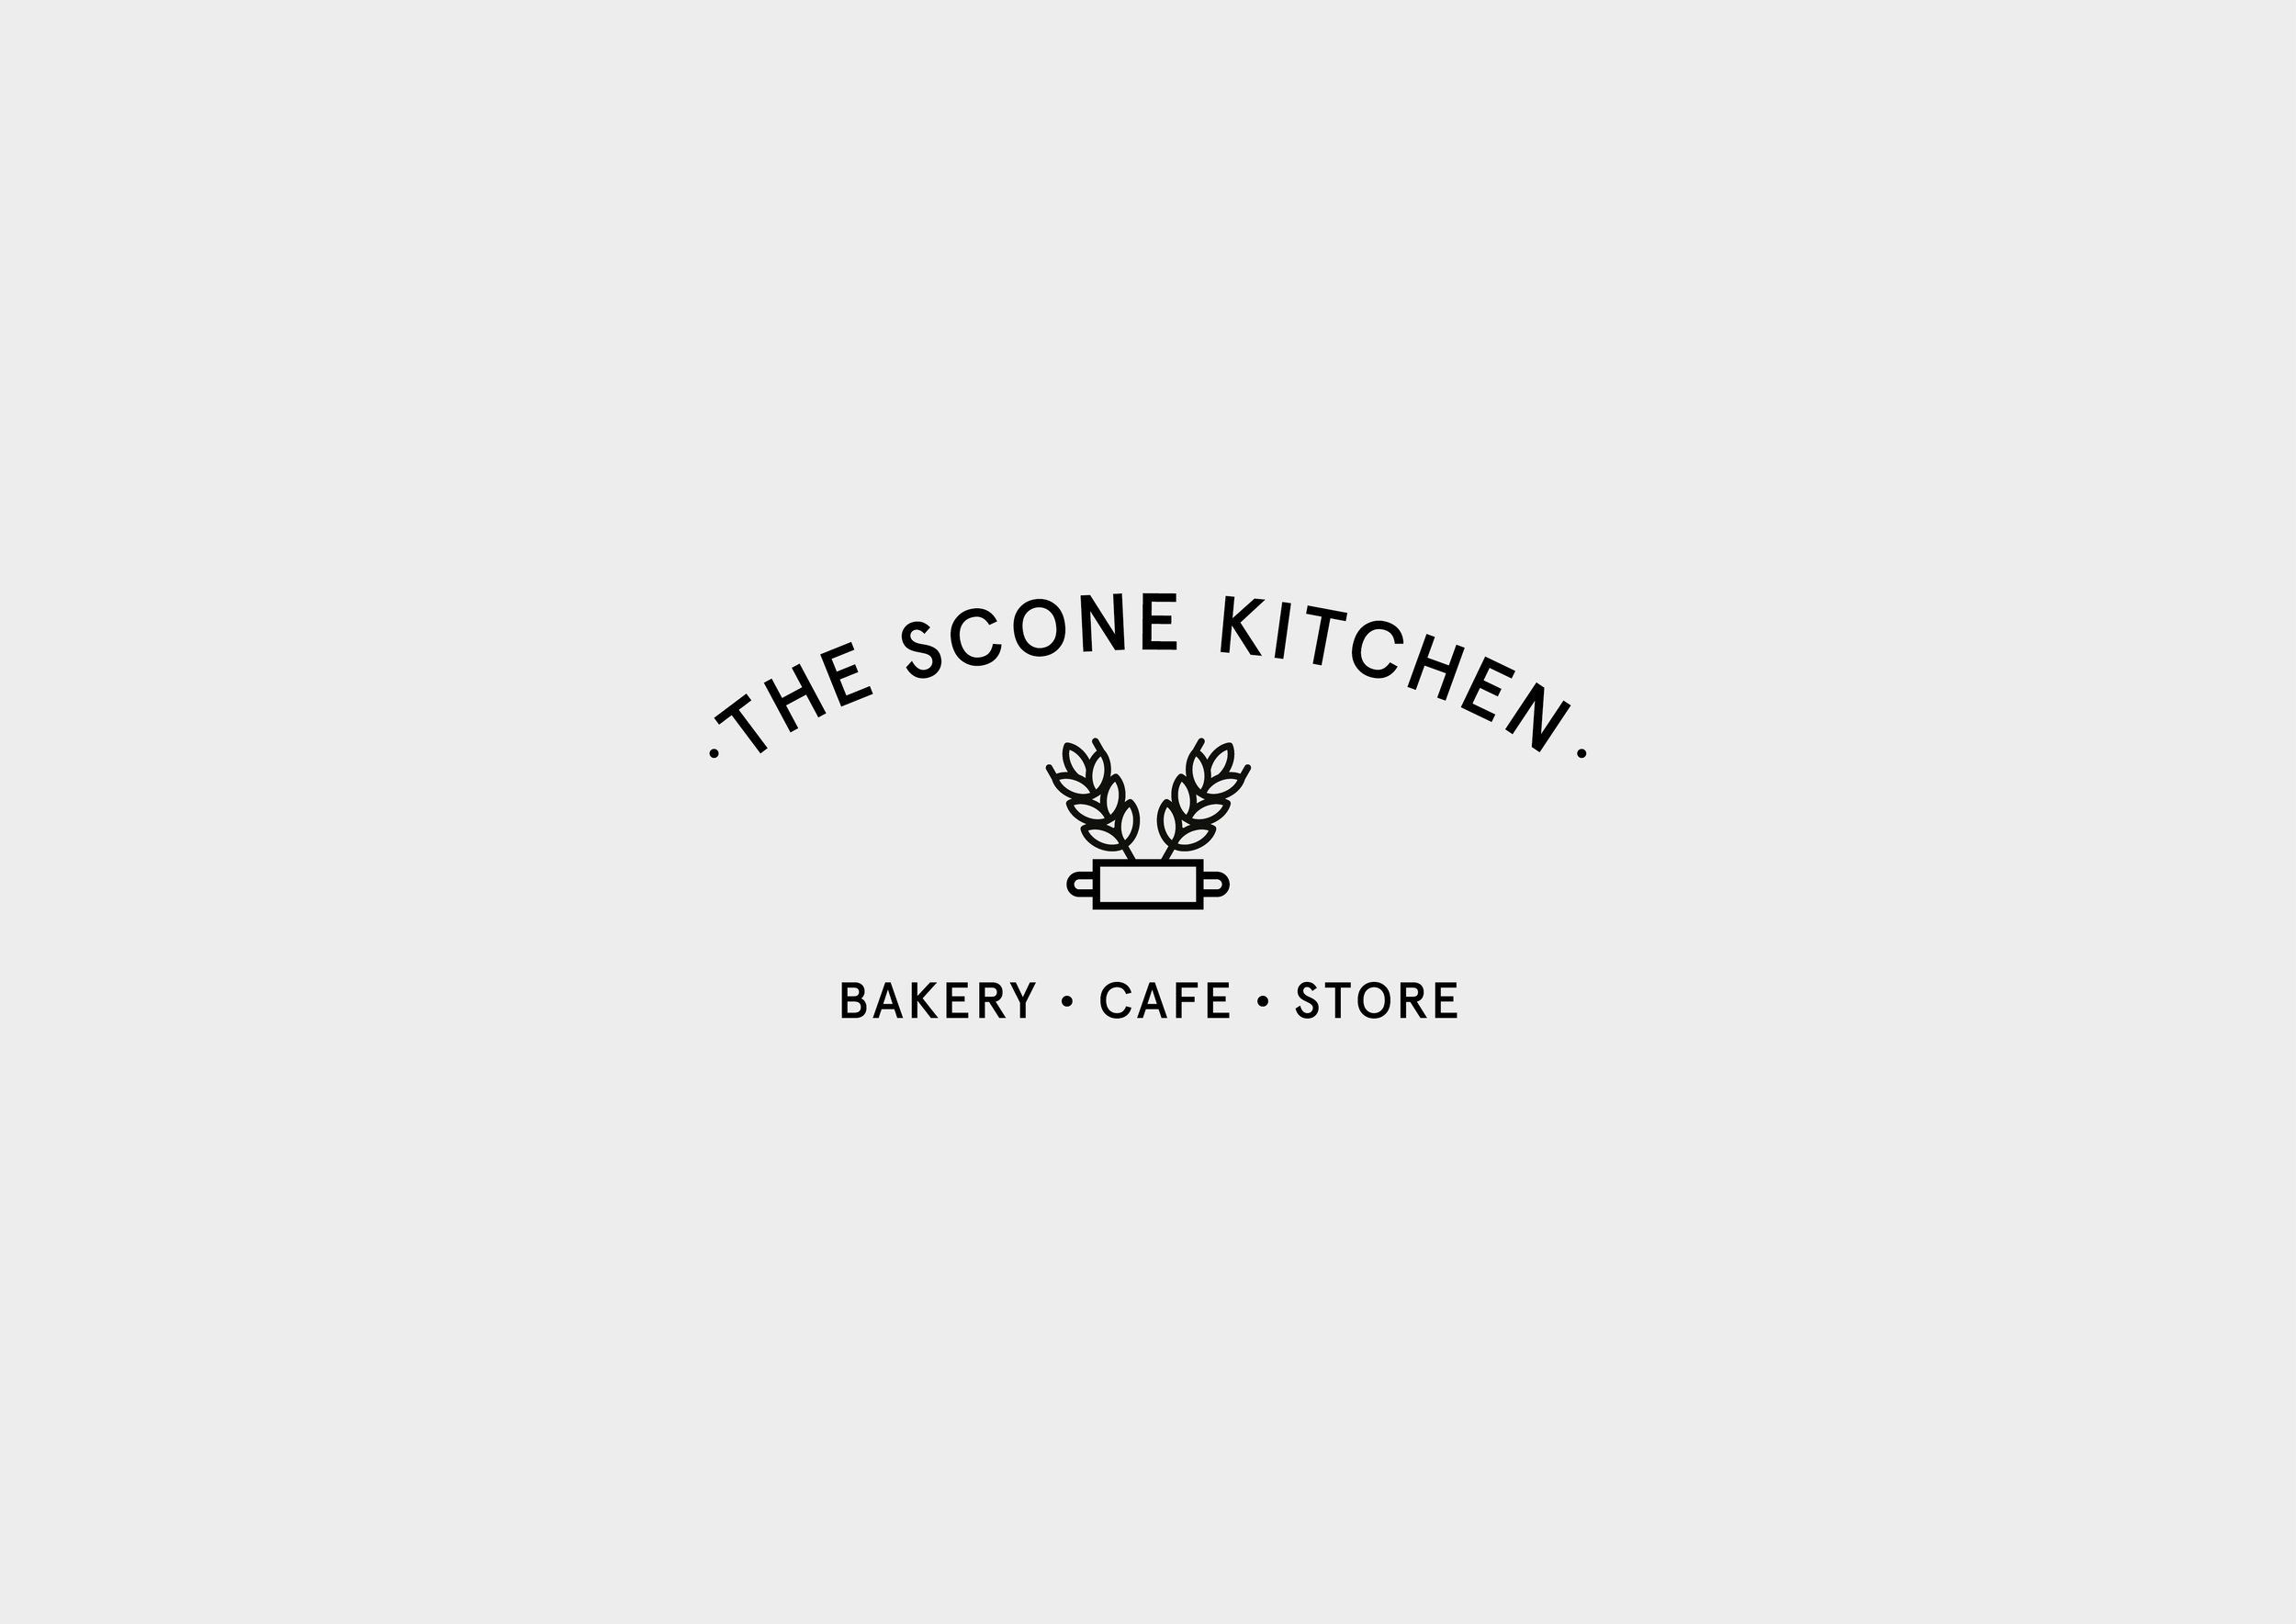 Brand Designer Cafe branding design - The Scone Kitchen 